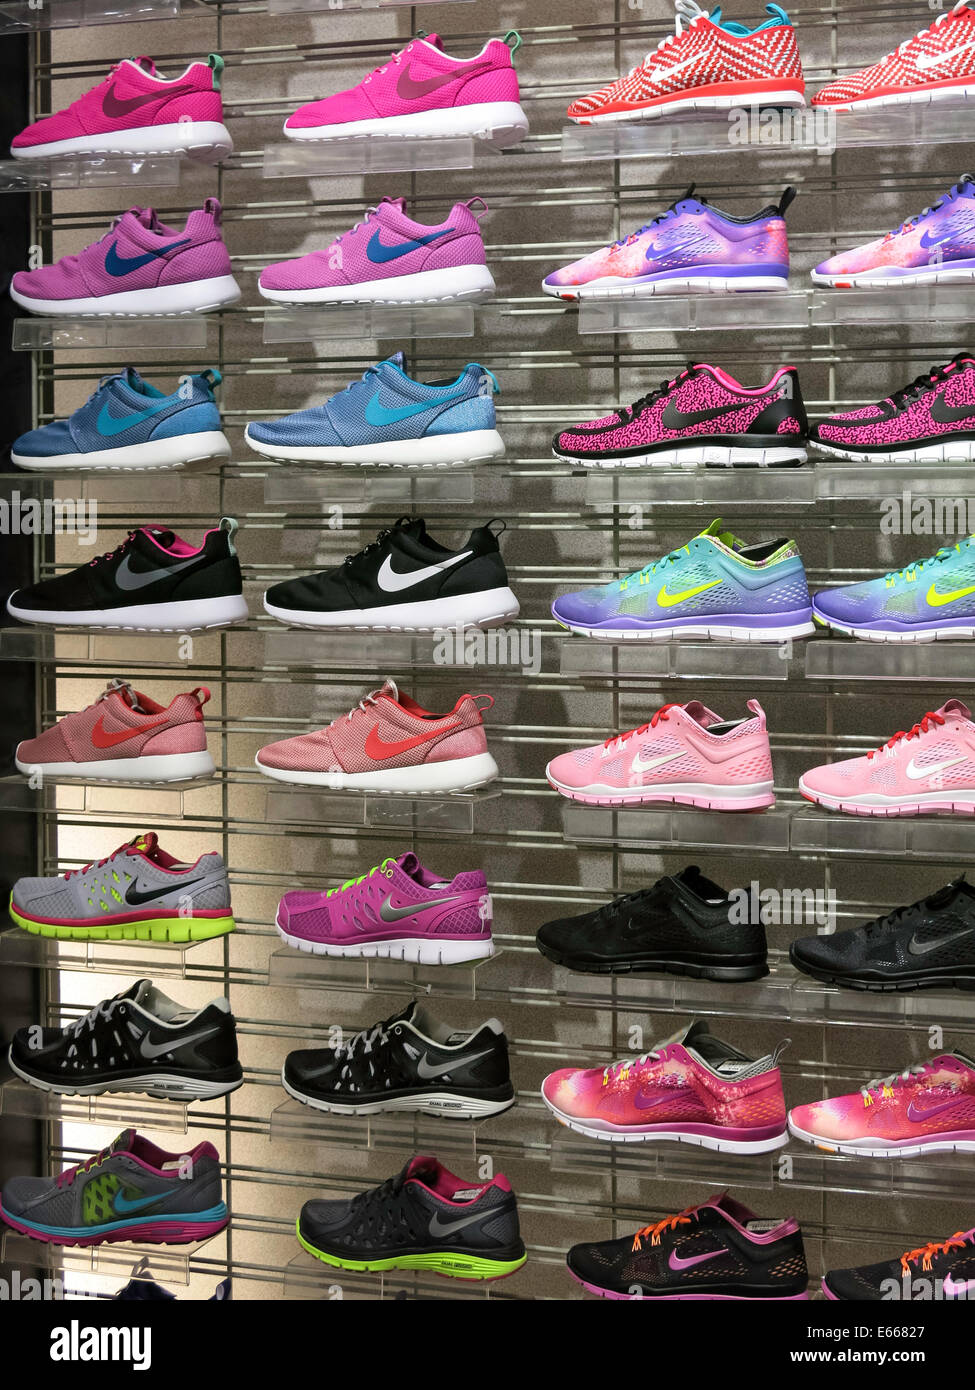 Torrente préstamo conductor Calzado deportivo Nike, Champs Sports en el Holiday Village Mall, Great  Falls, MT, ESTADOS UNIDOS Fotografía de stock - Alamy